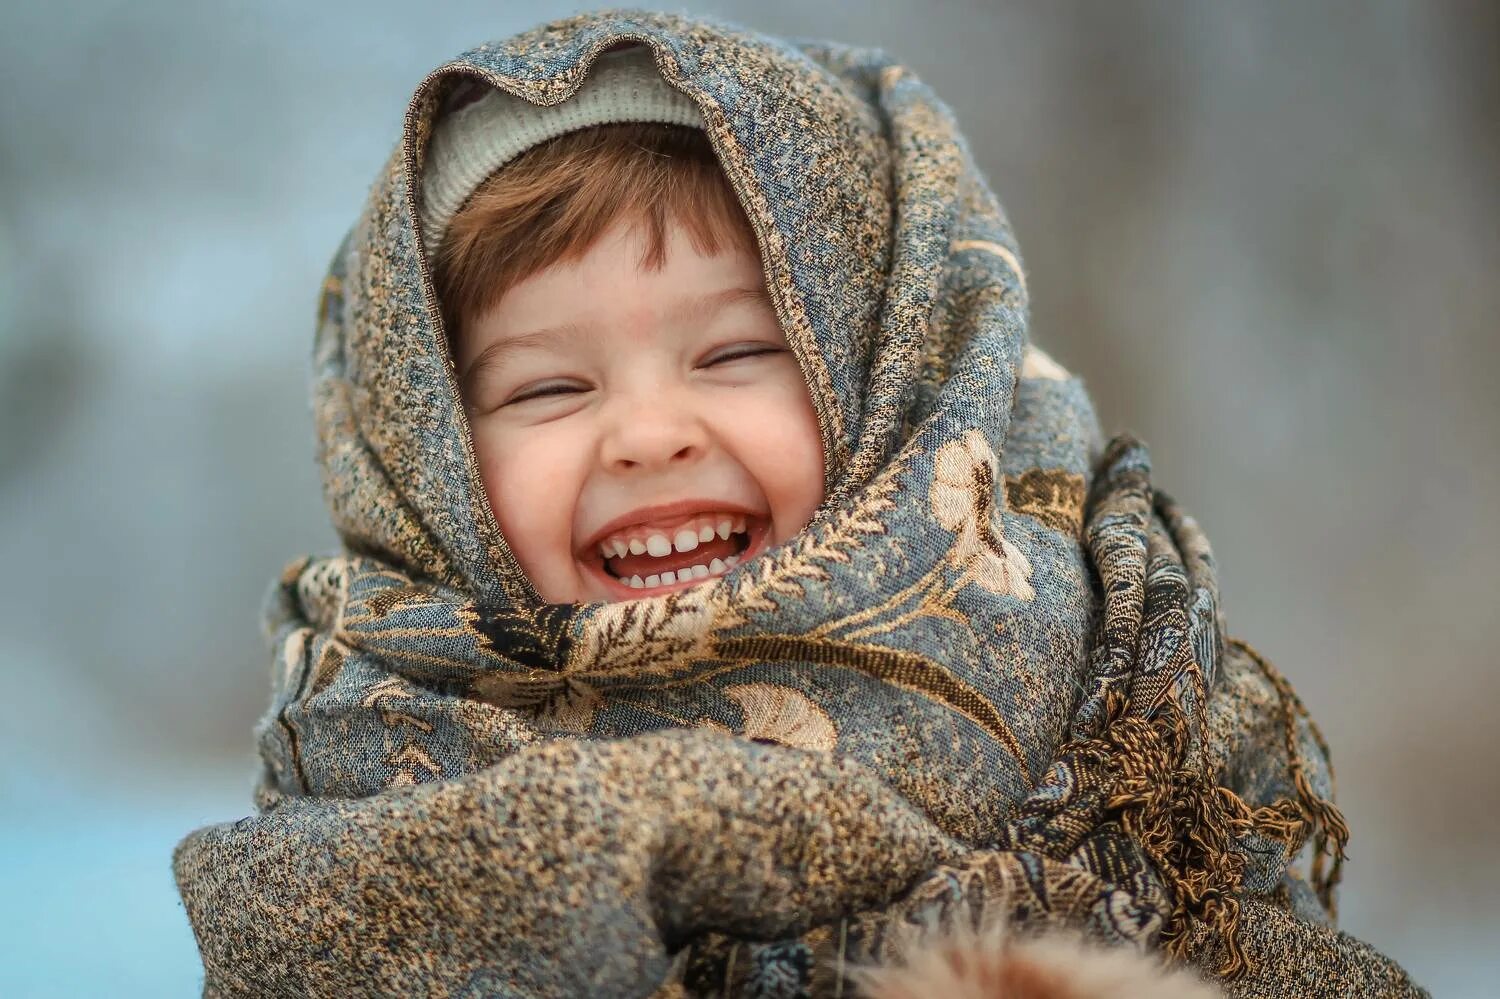 Дети одевались потеплее. Укутанный малыш. Укутанный ребенок зимой. Ребенок укутанный в шарф. Укутанный ребенок девочка.